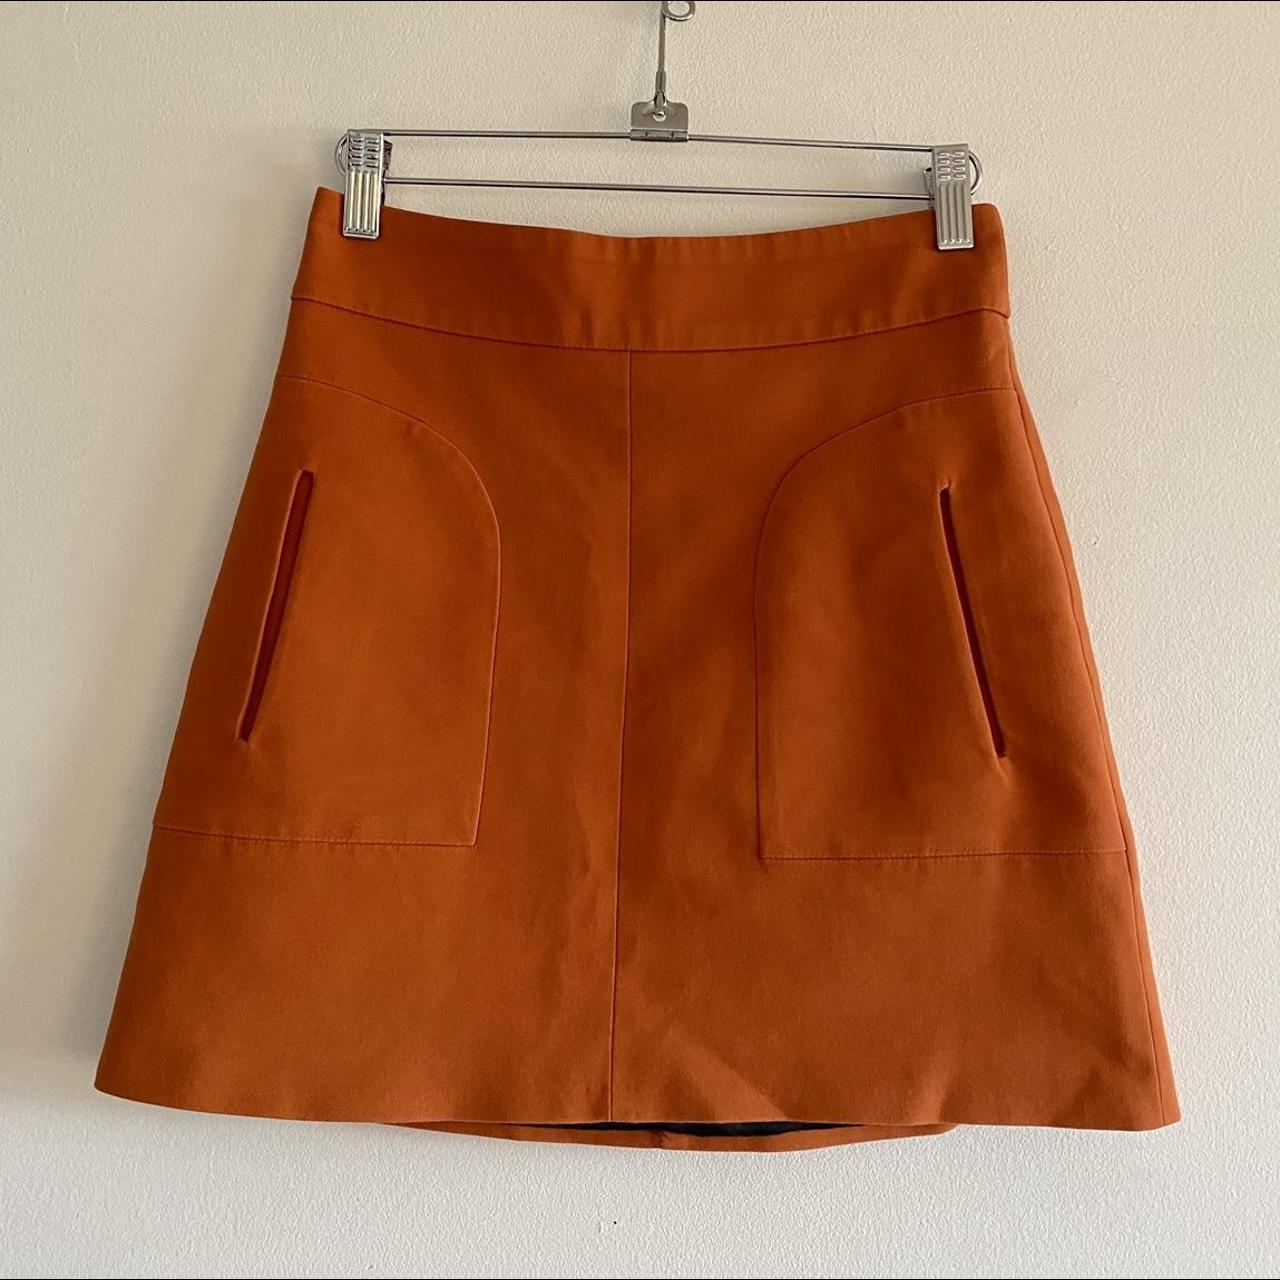 Orange Zara Mini Skirt Made in Morocco Size... - Depop